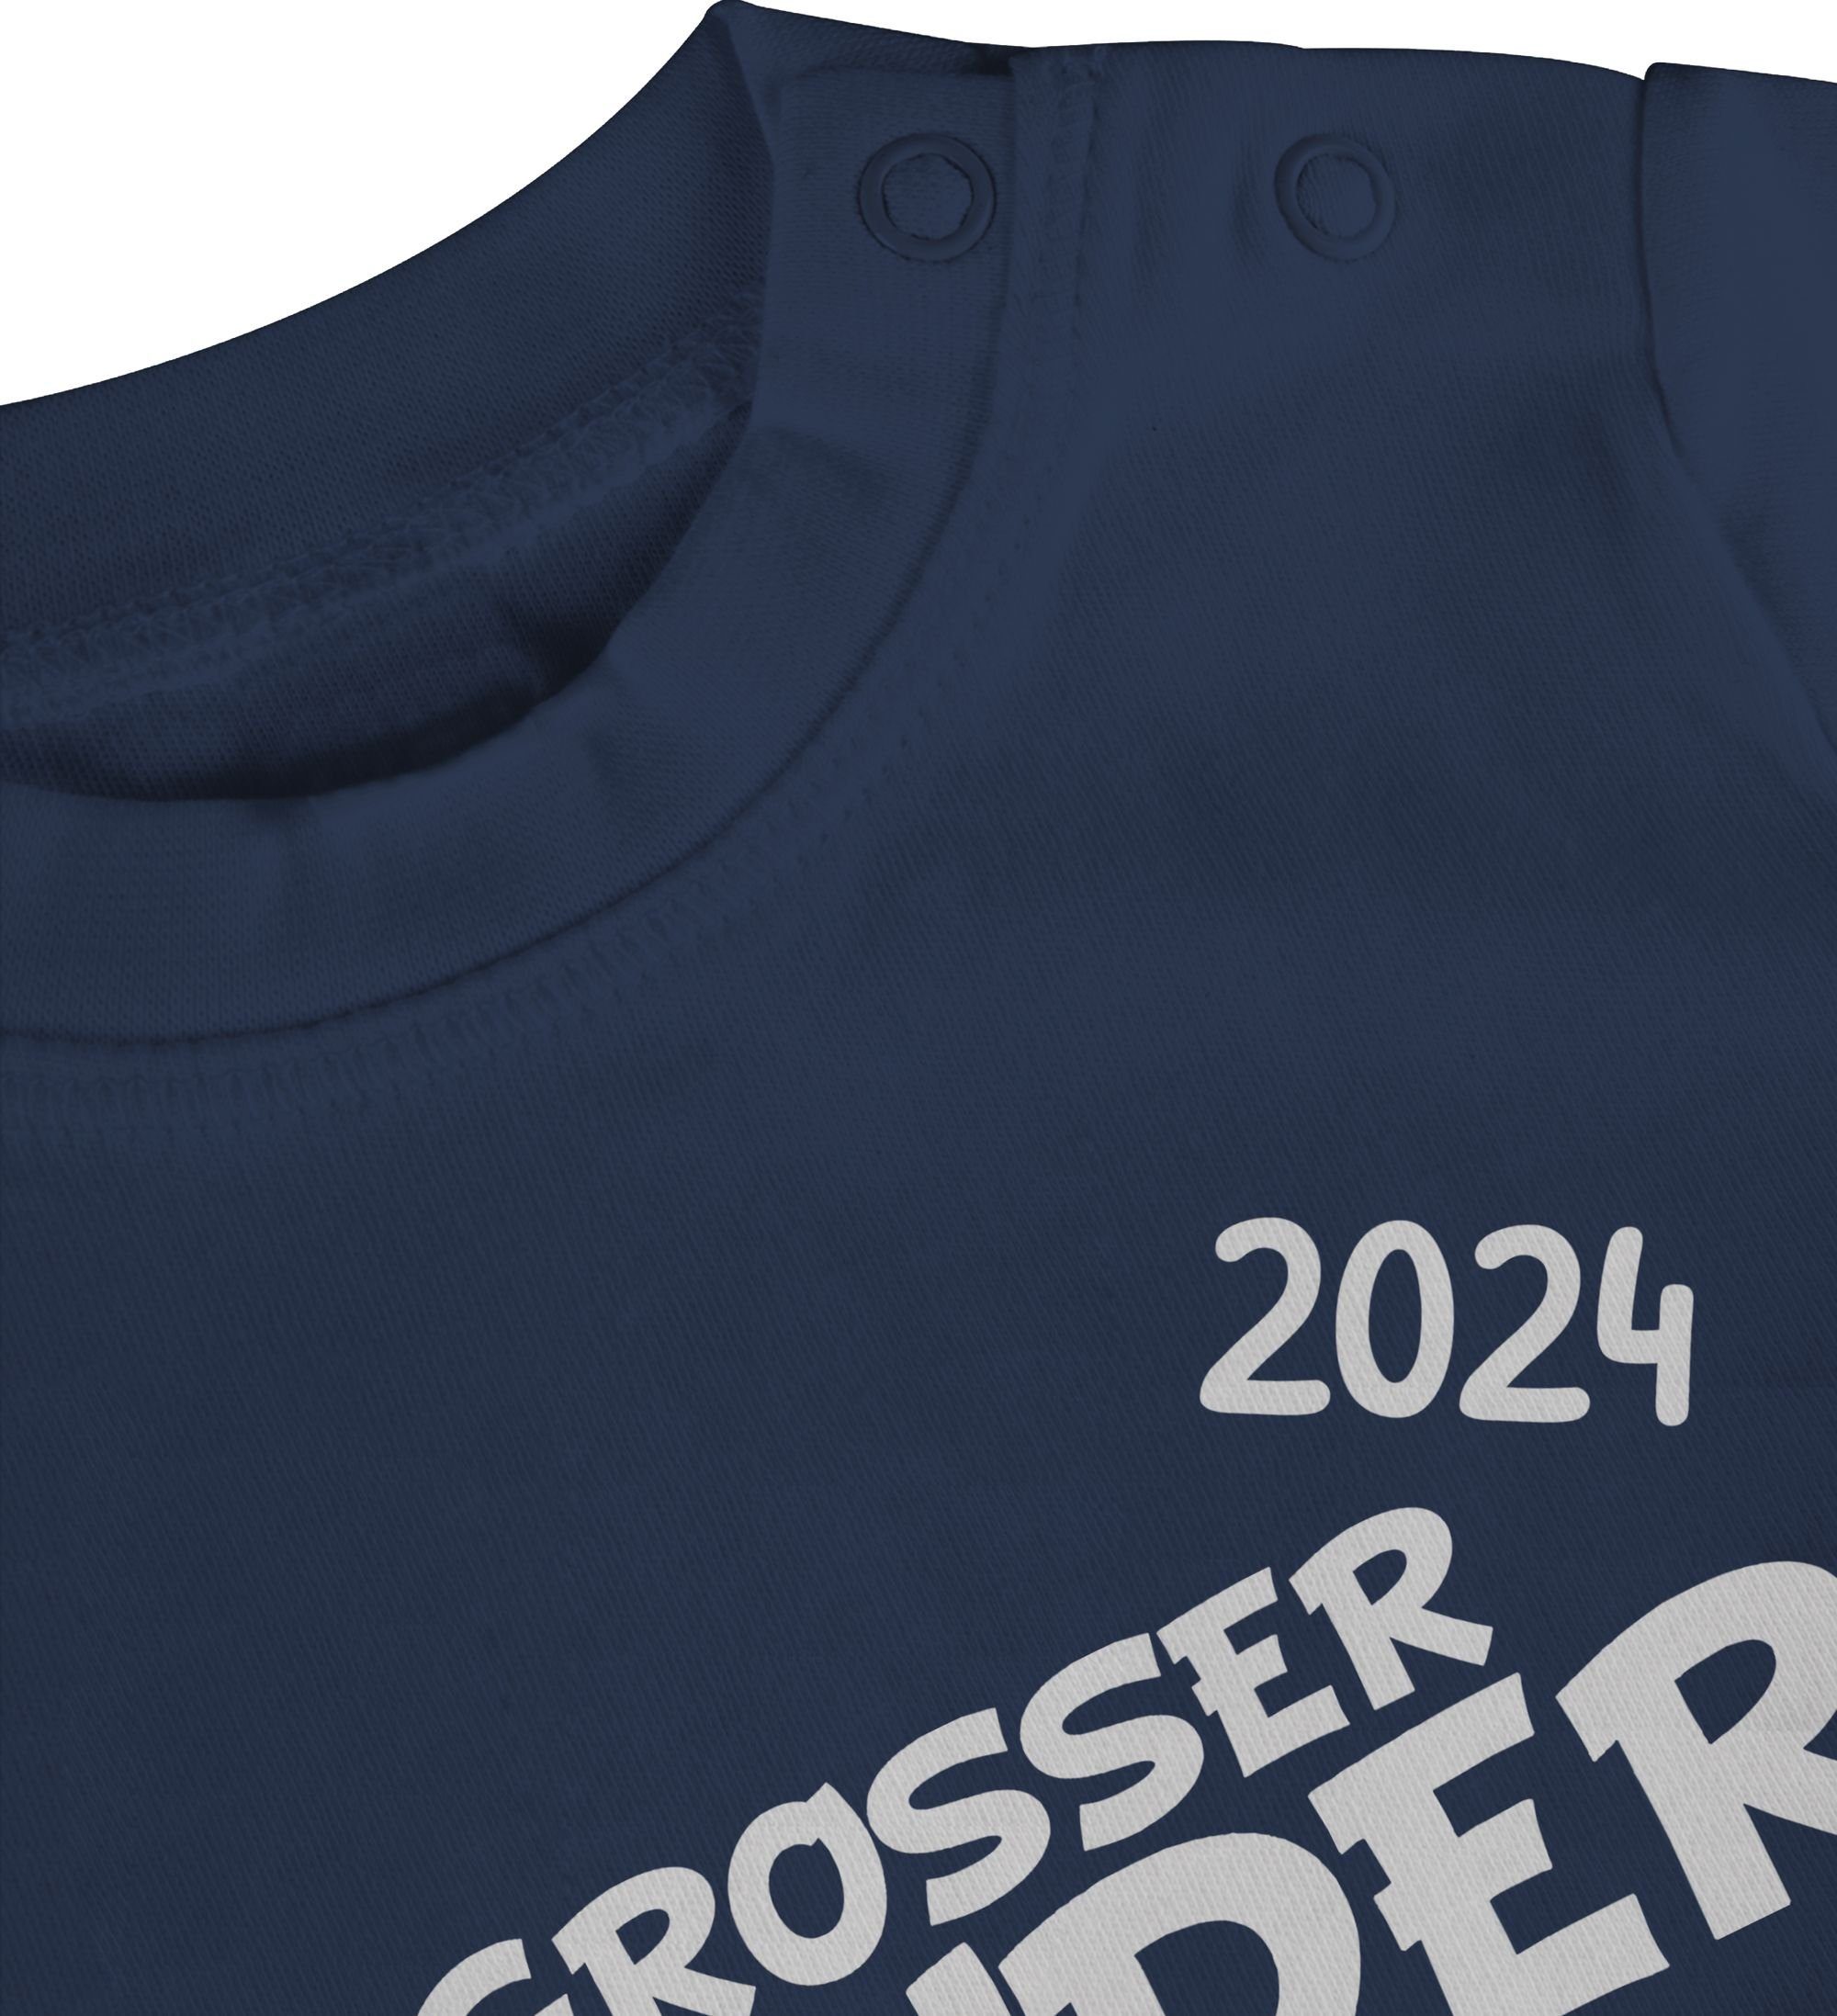 Shirtracer T-Shirt Großer Bruder 2024 Navy Großer Blau 1 Bruder loading